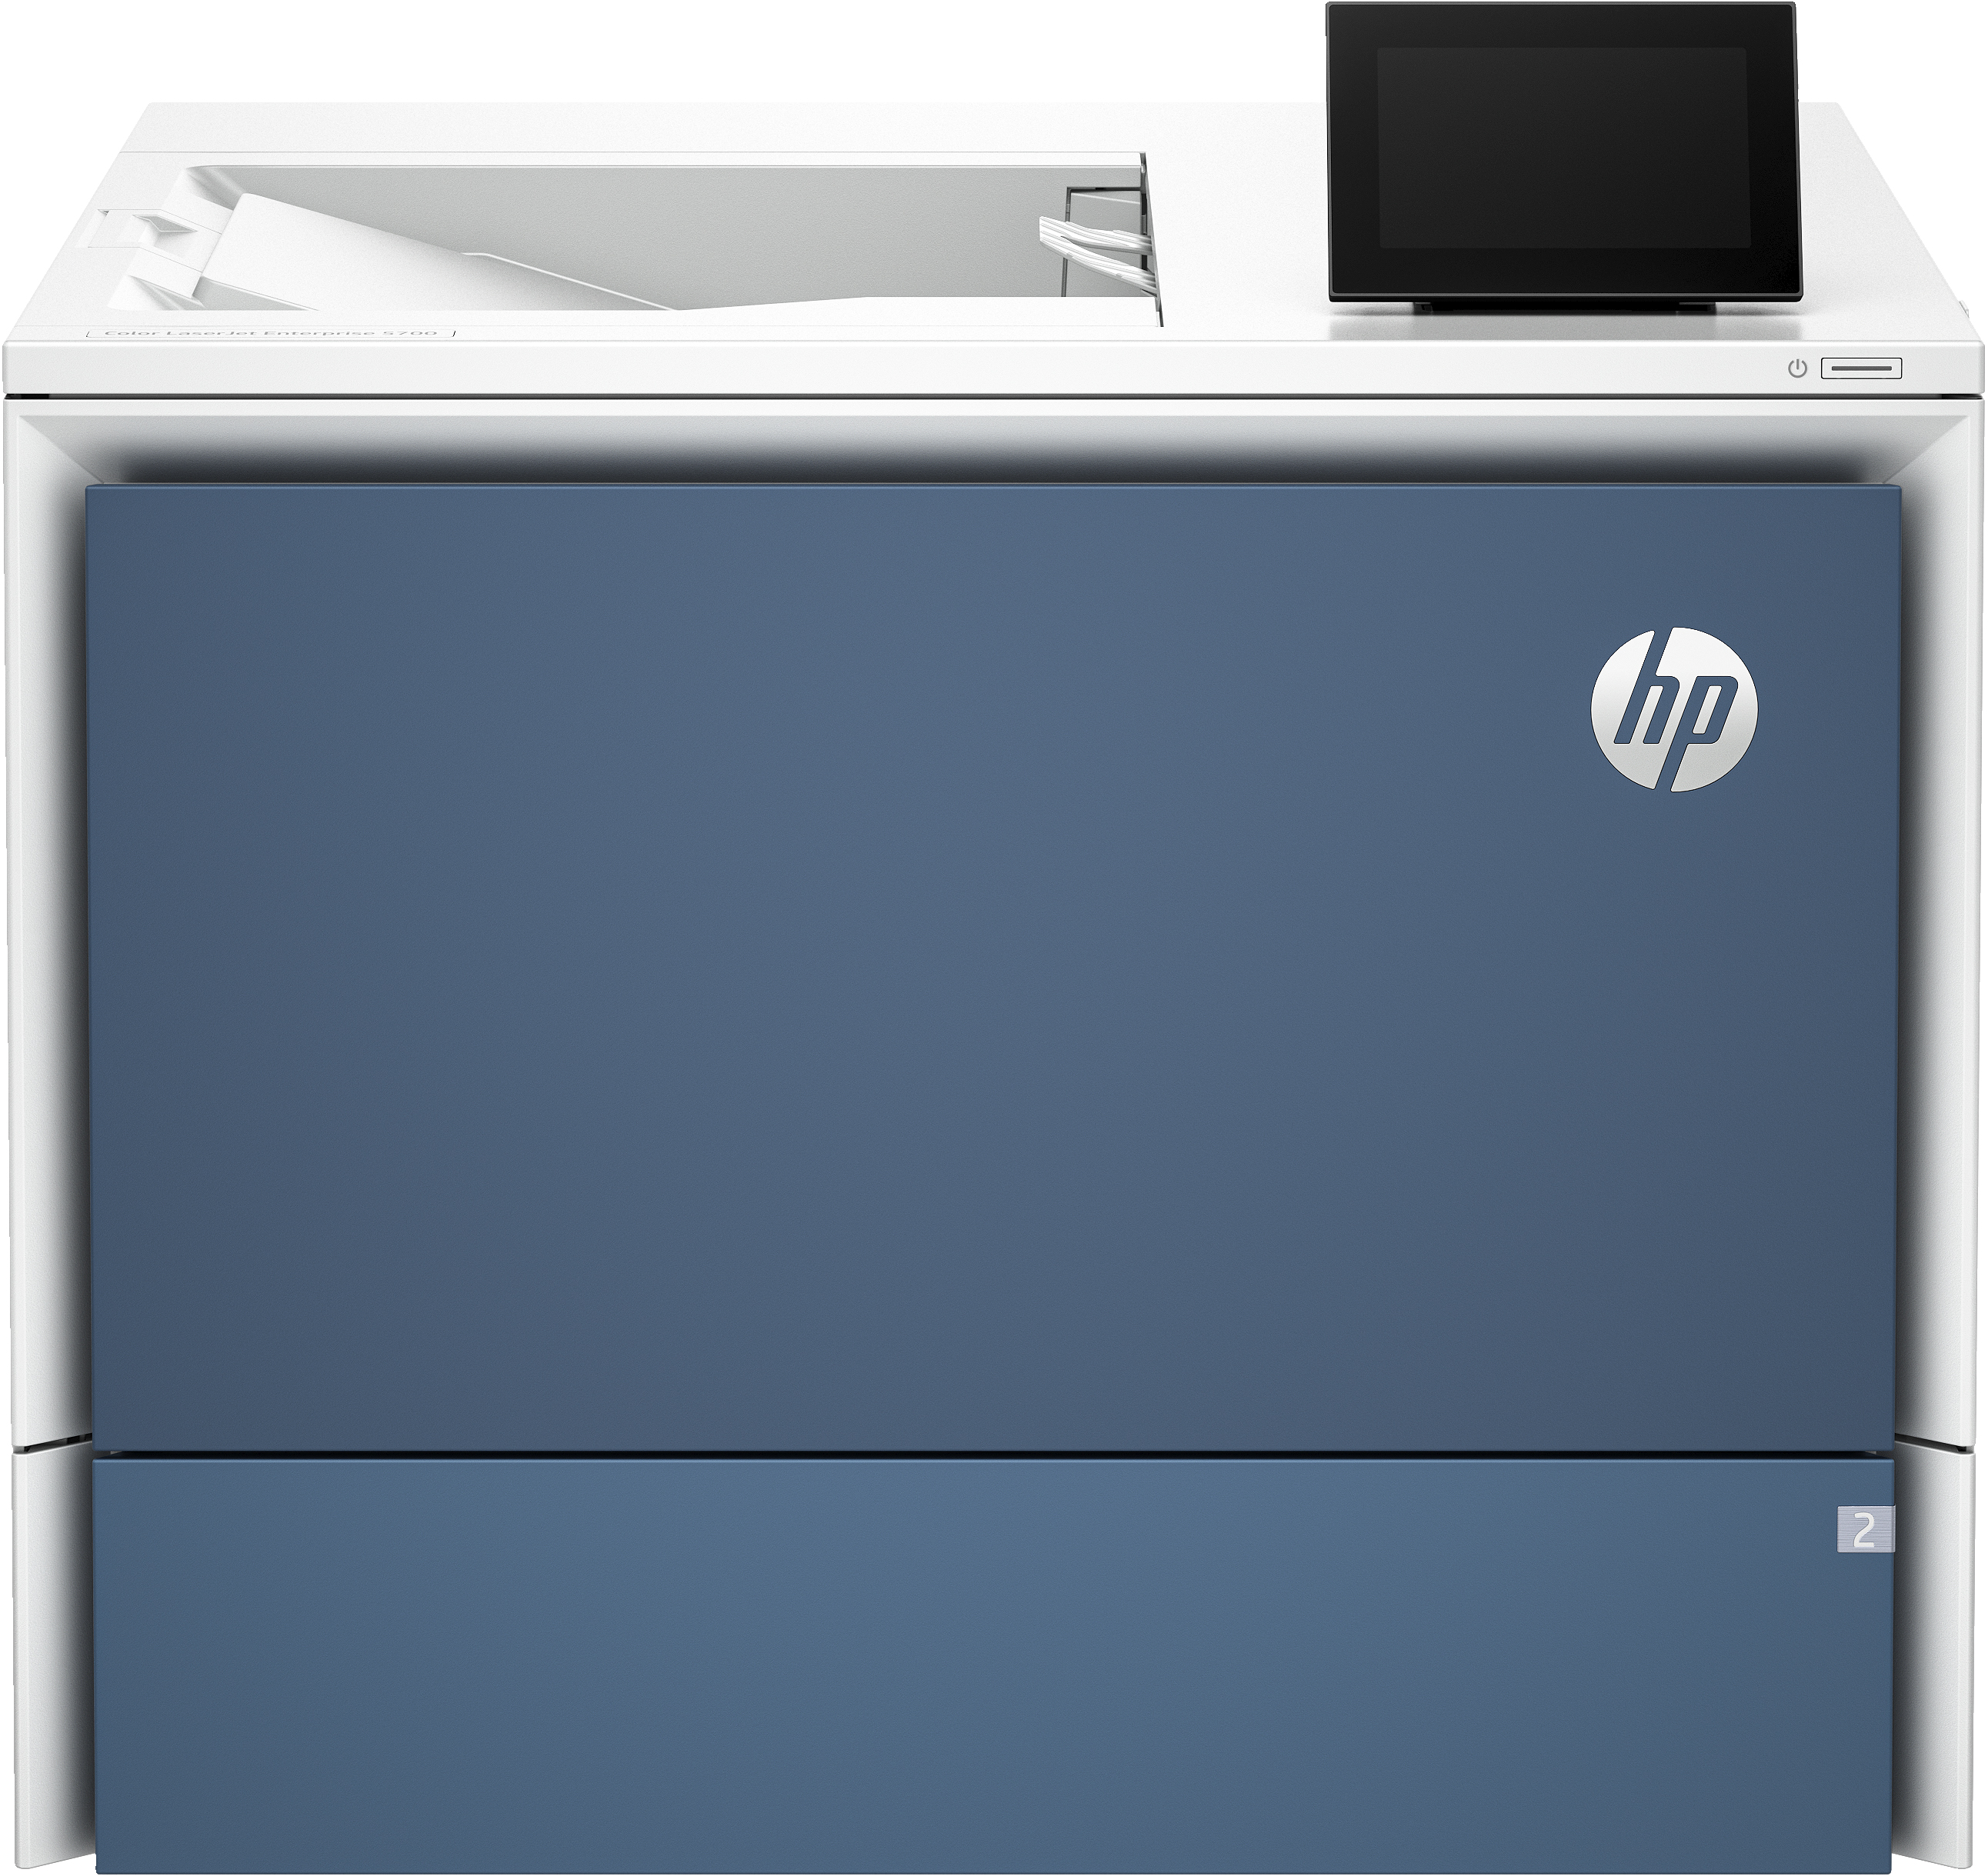 HP Color LaserJet Enterprise Stampante 5700dn, Color, Stampante per Stampa, porta unità flash USB anteriore; Vassoi ad alta capacità opzionali; touchscreen; Cartuccia TerraJet